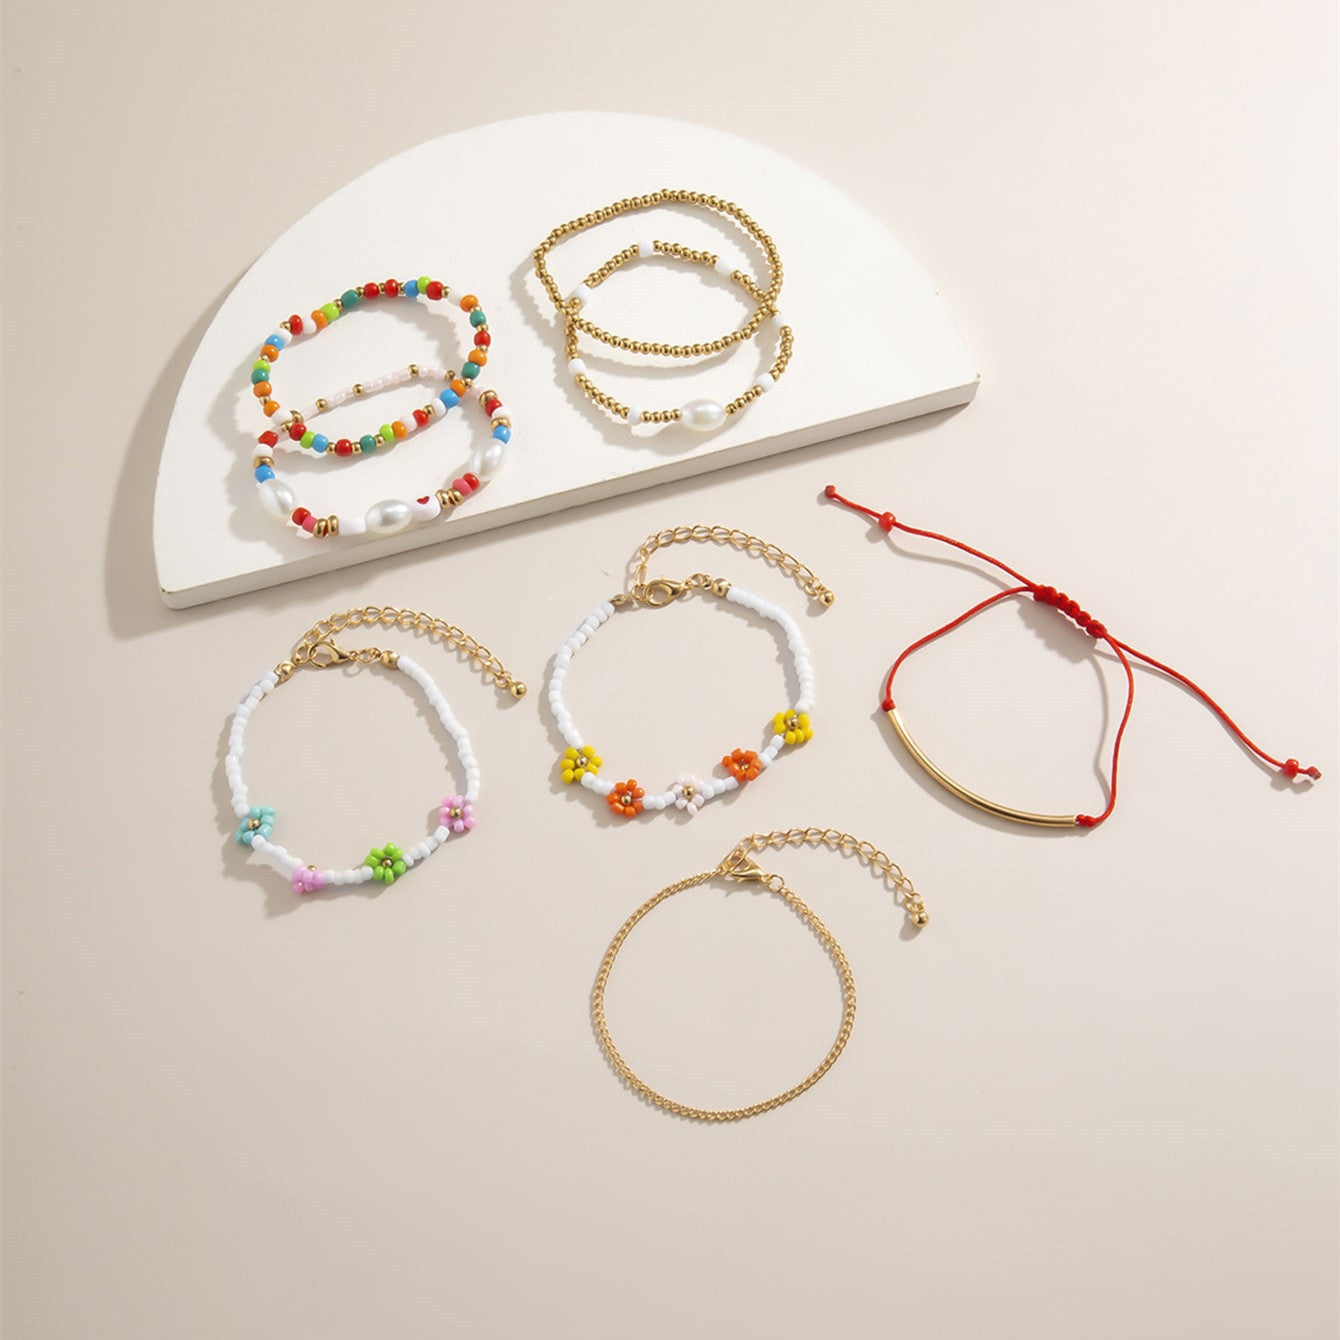 Handmade 8Pcs Colorful Beads Bracelets Set For Women Girls